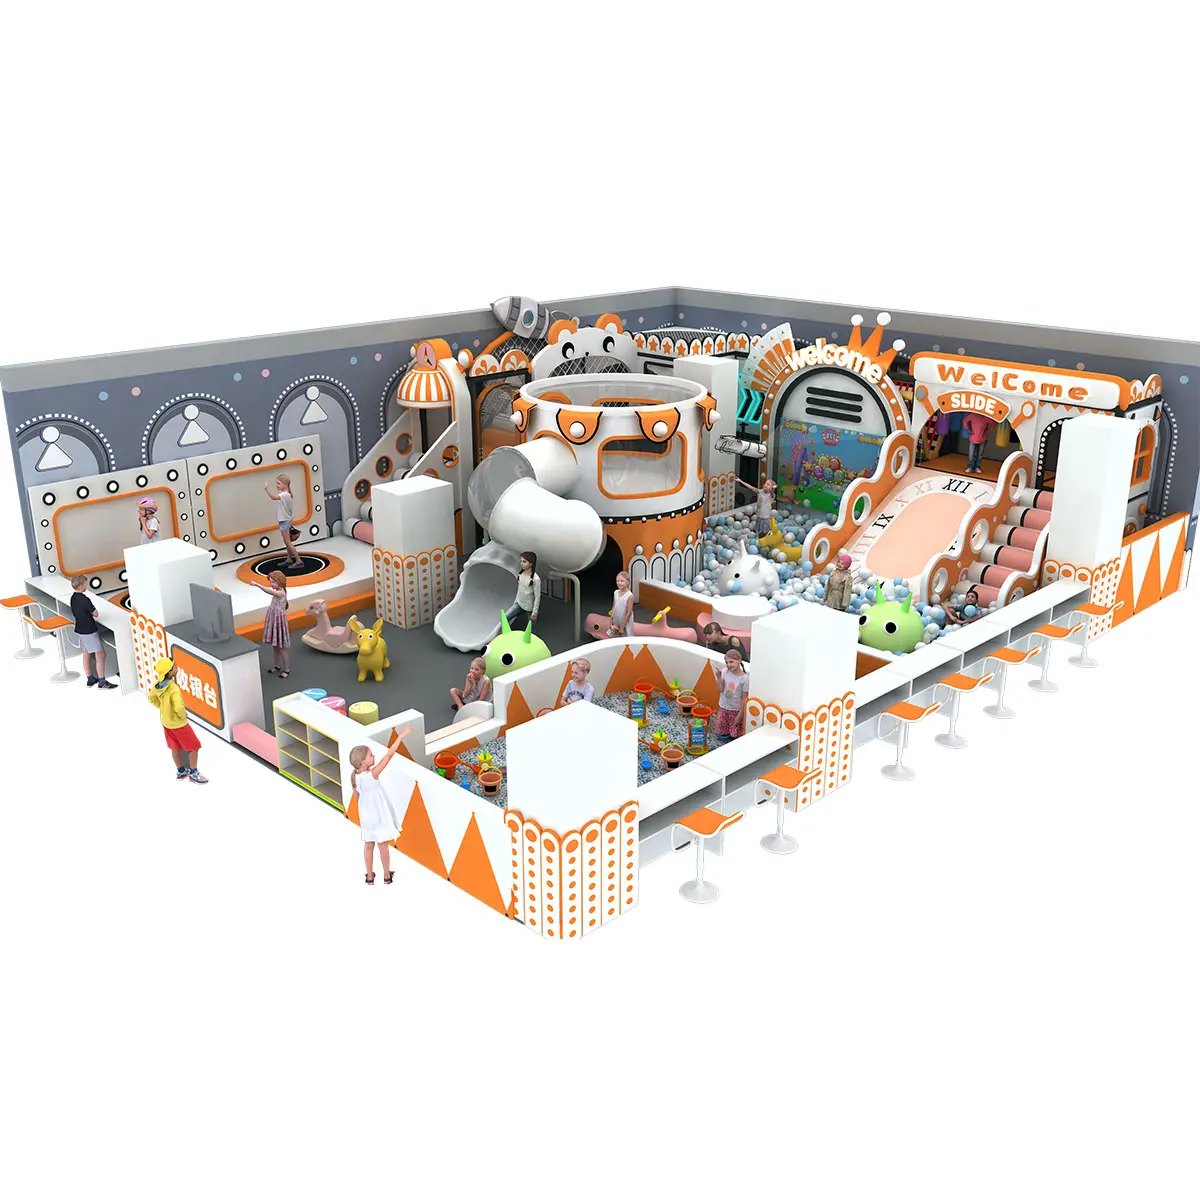 Design e fornitore del produttore disponibile per bambini commerciali Naughty Castle Soft Play Equipment parco giochi al coperto per bambini